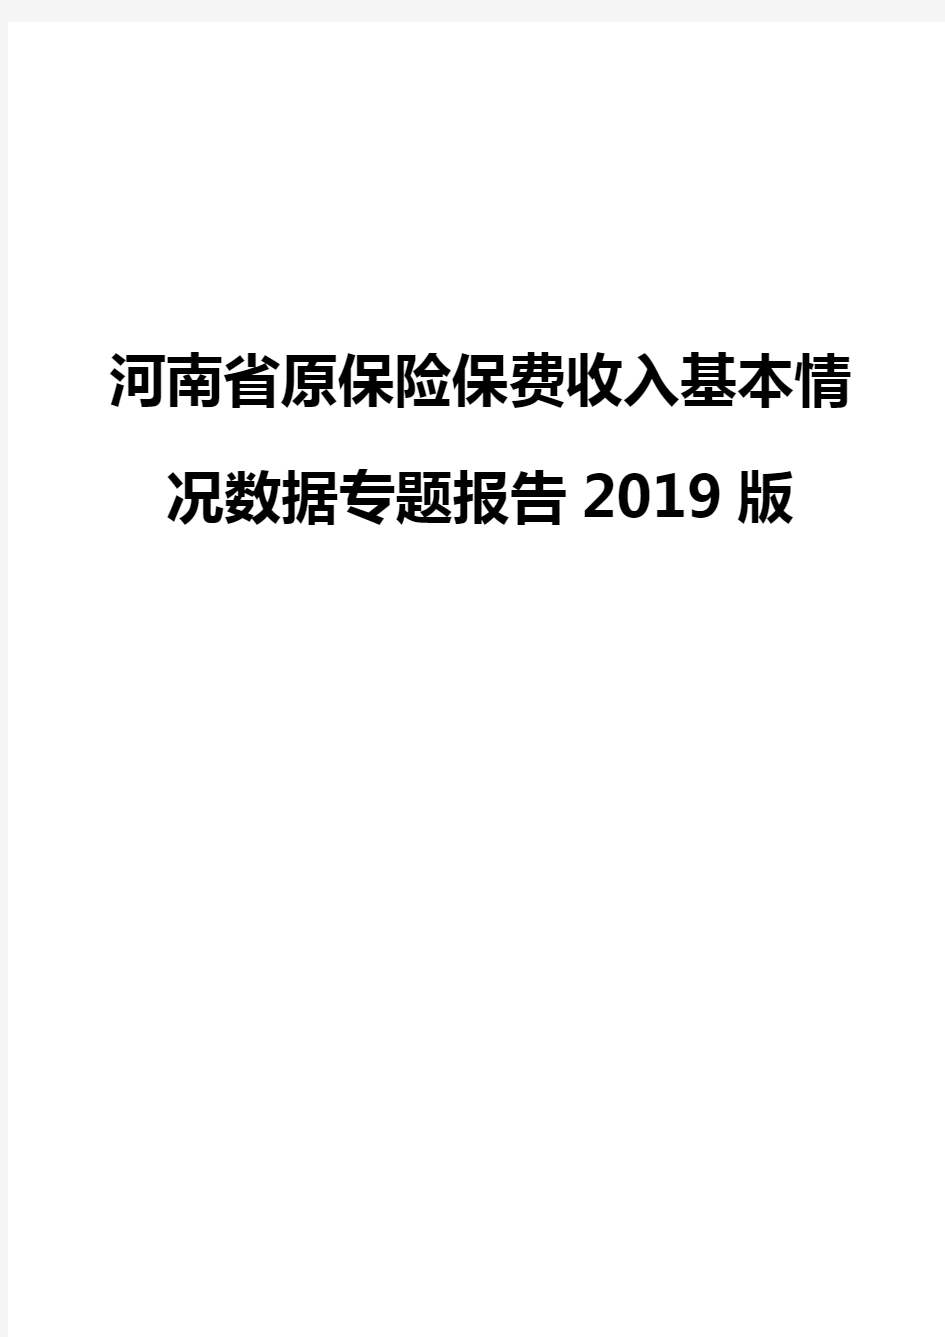 河南省原保险保费收入基本情况数据专题报告2019版